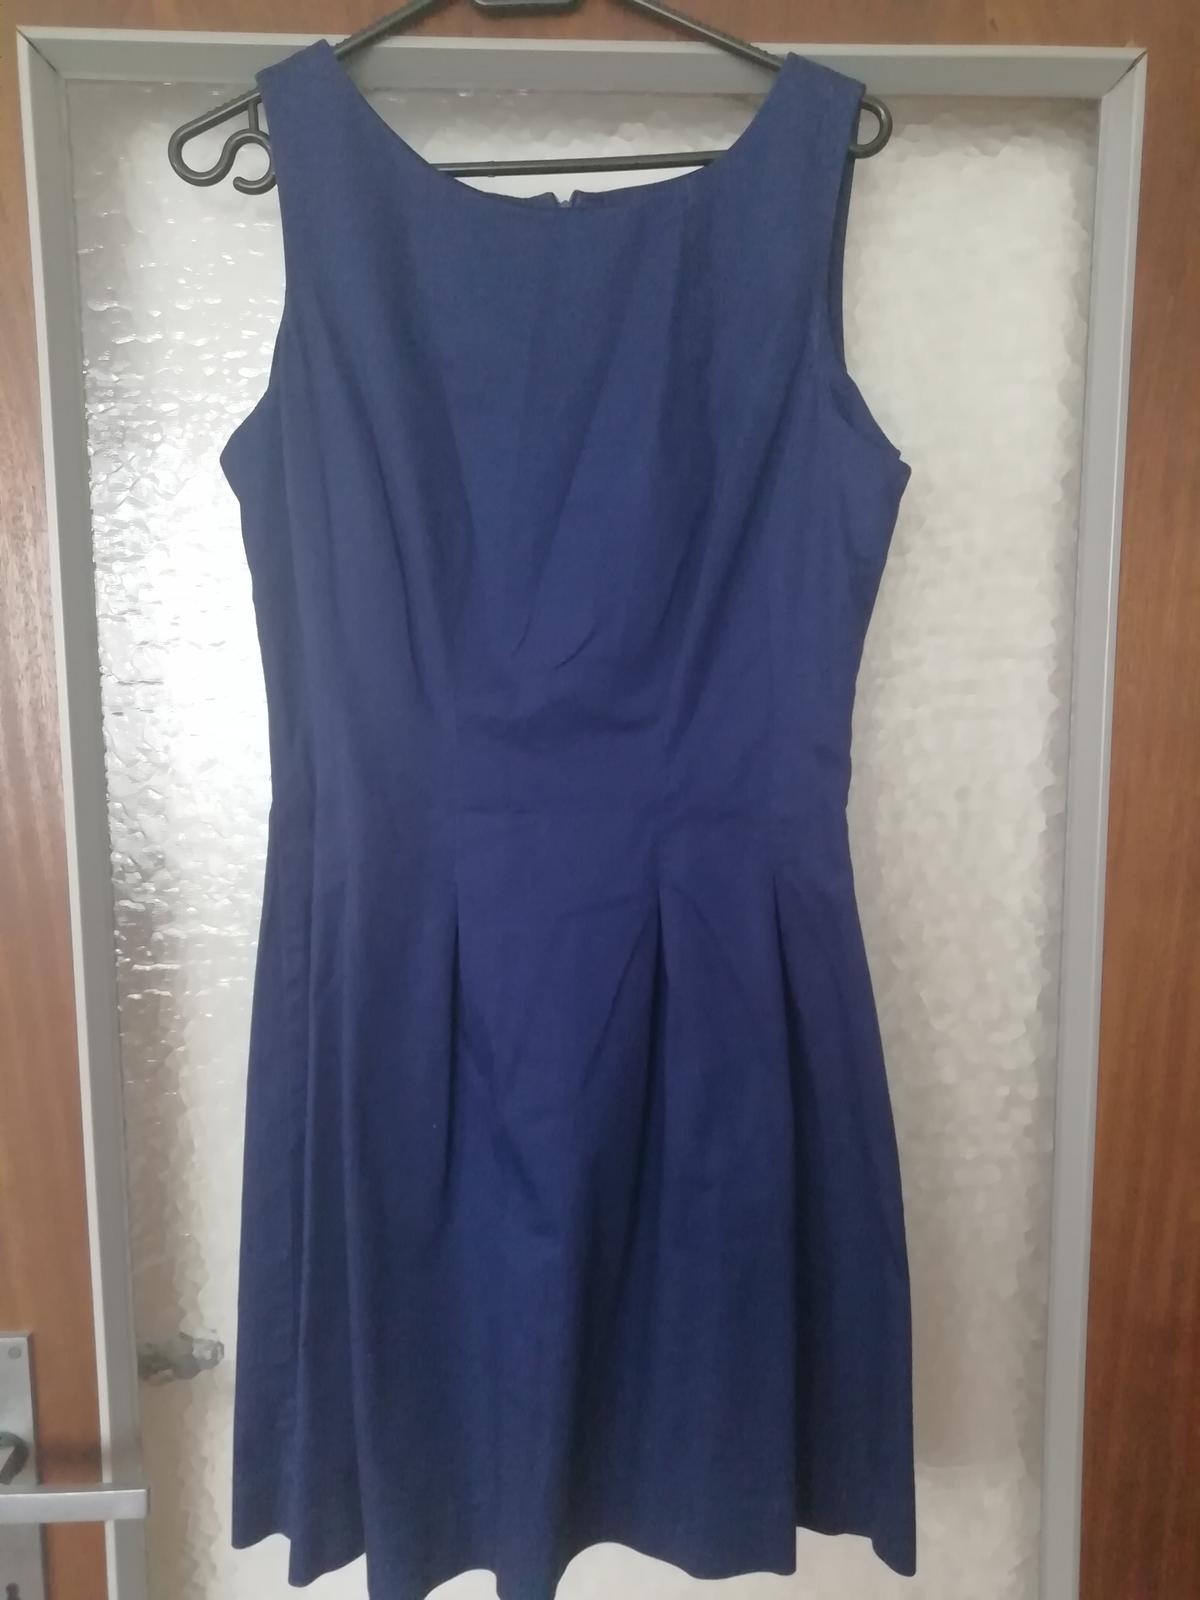 Modre šaty - Obrázok č. 1